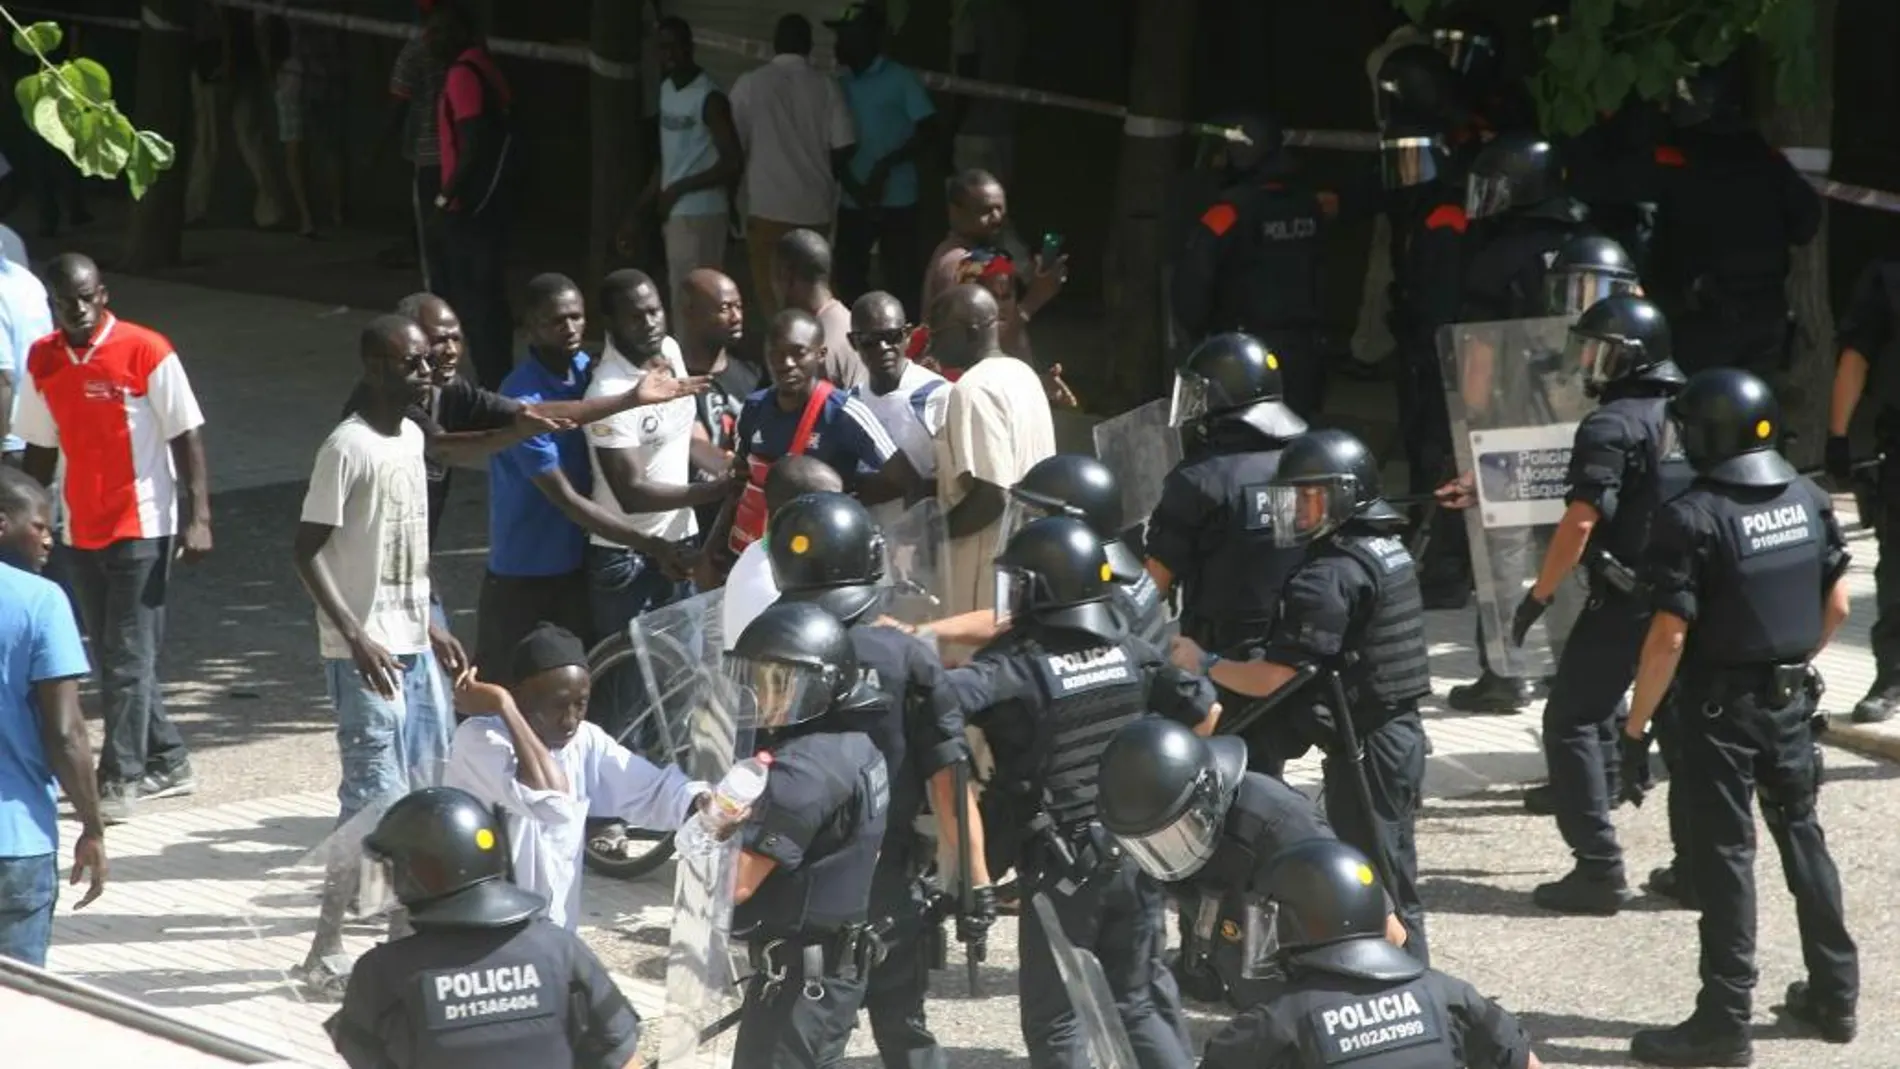 La retirada del cadáver del senegalés fallecido provocó momentos de tensión